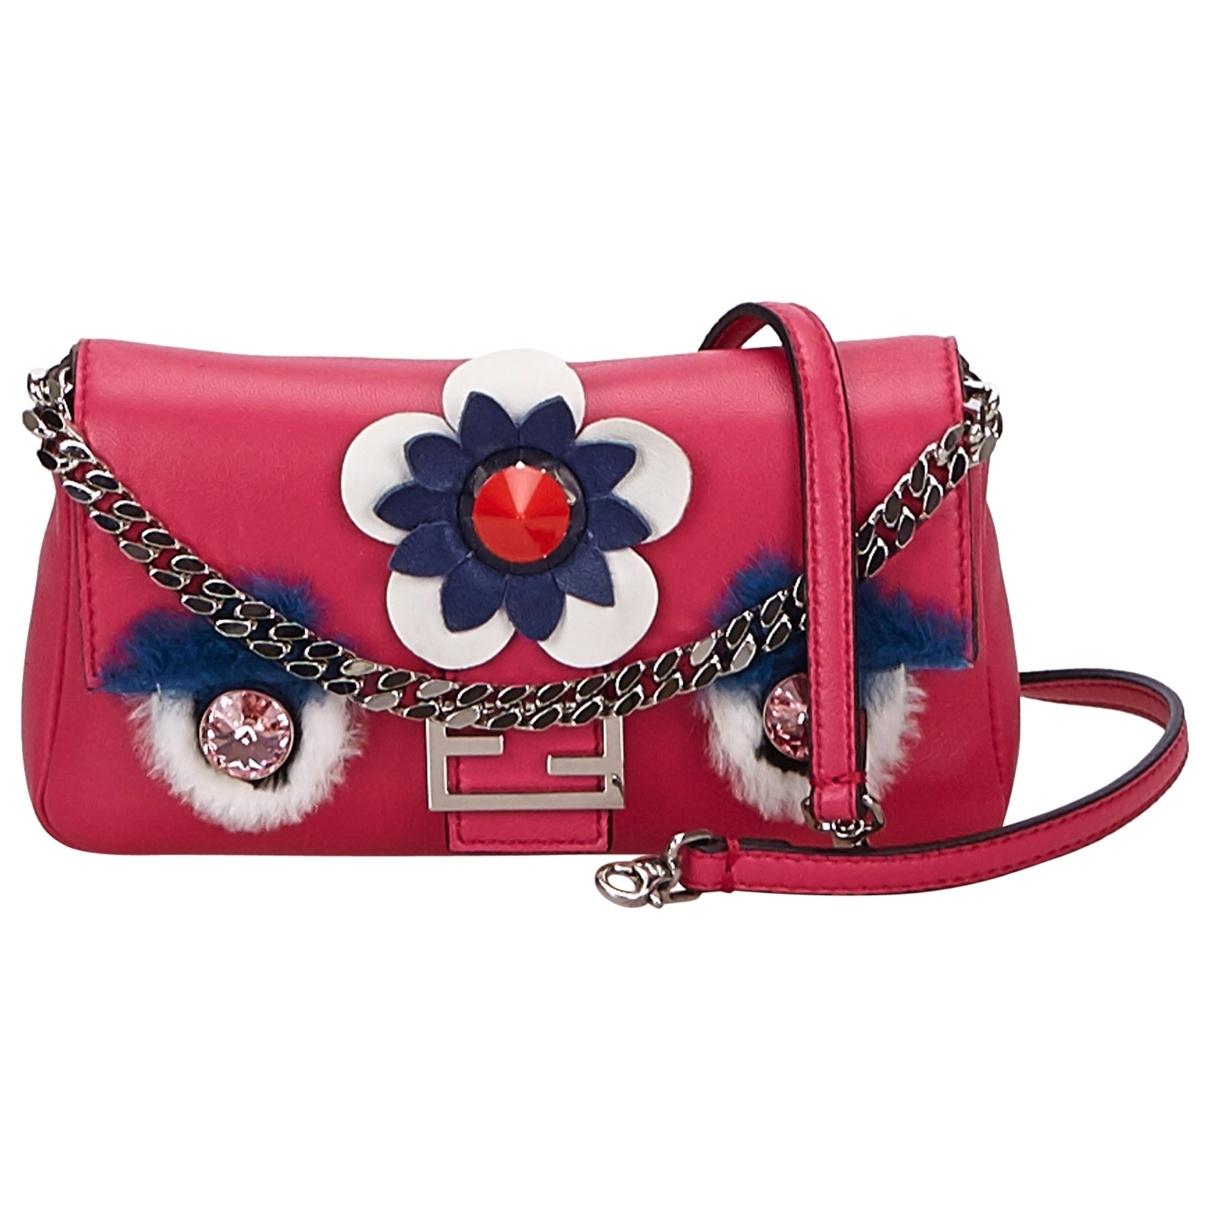 Lyst - Fendi Baguette Pink Leather Handbag in Pink